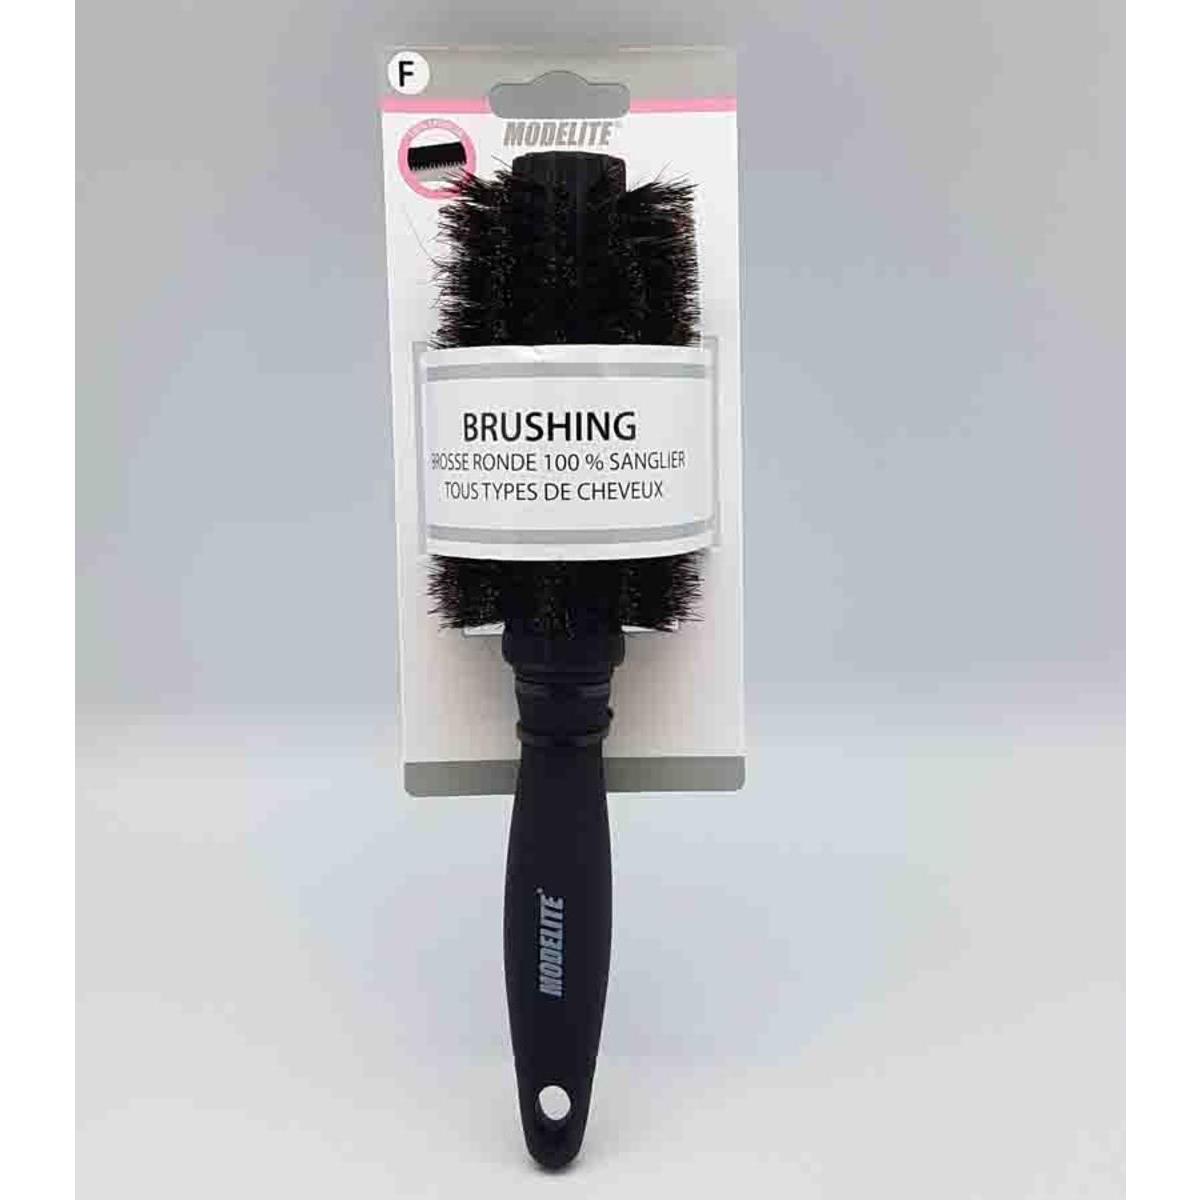 Brosse brushing 100 % poils de sanglier - ø 2.2 x L 26 cm - Noir - MODELITE